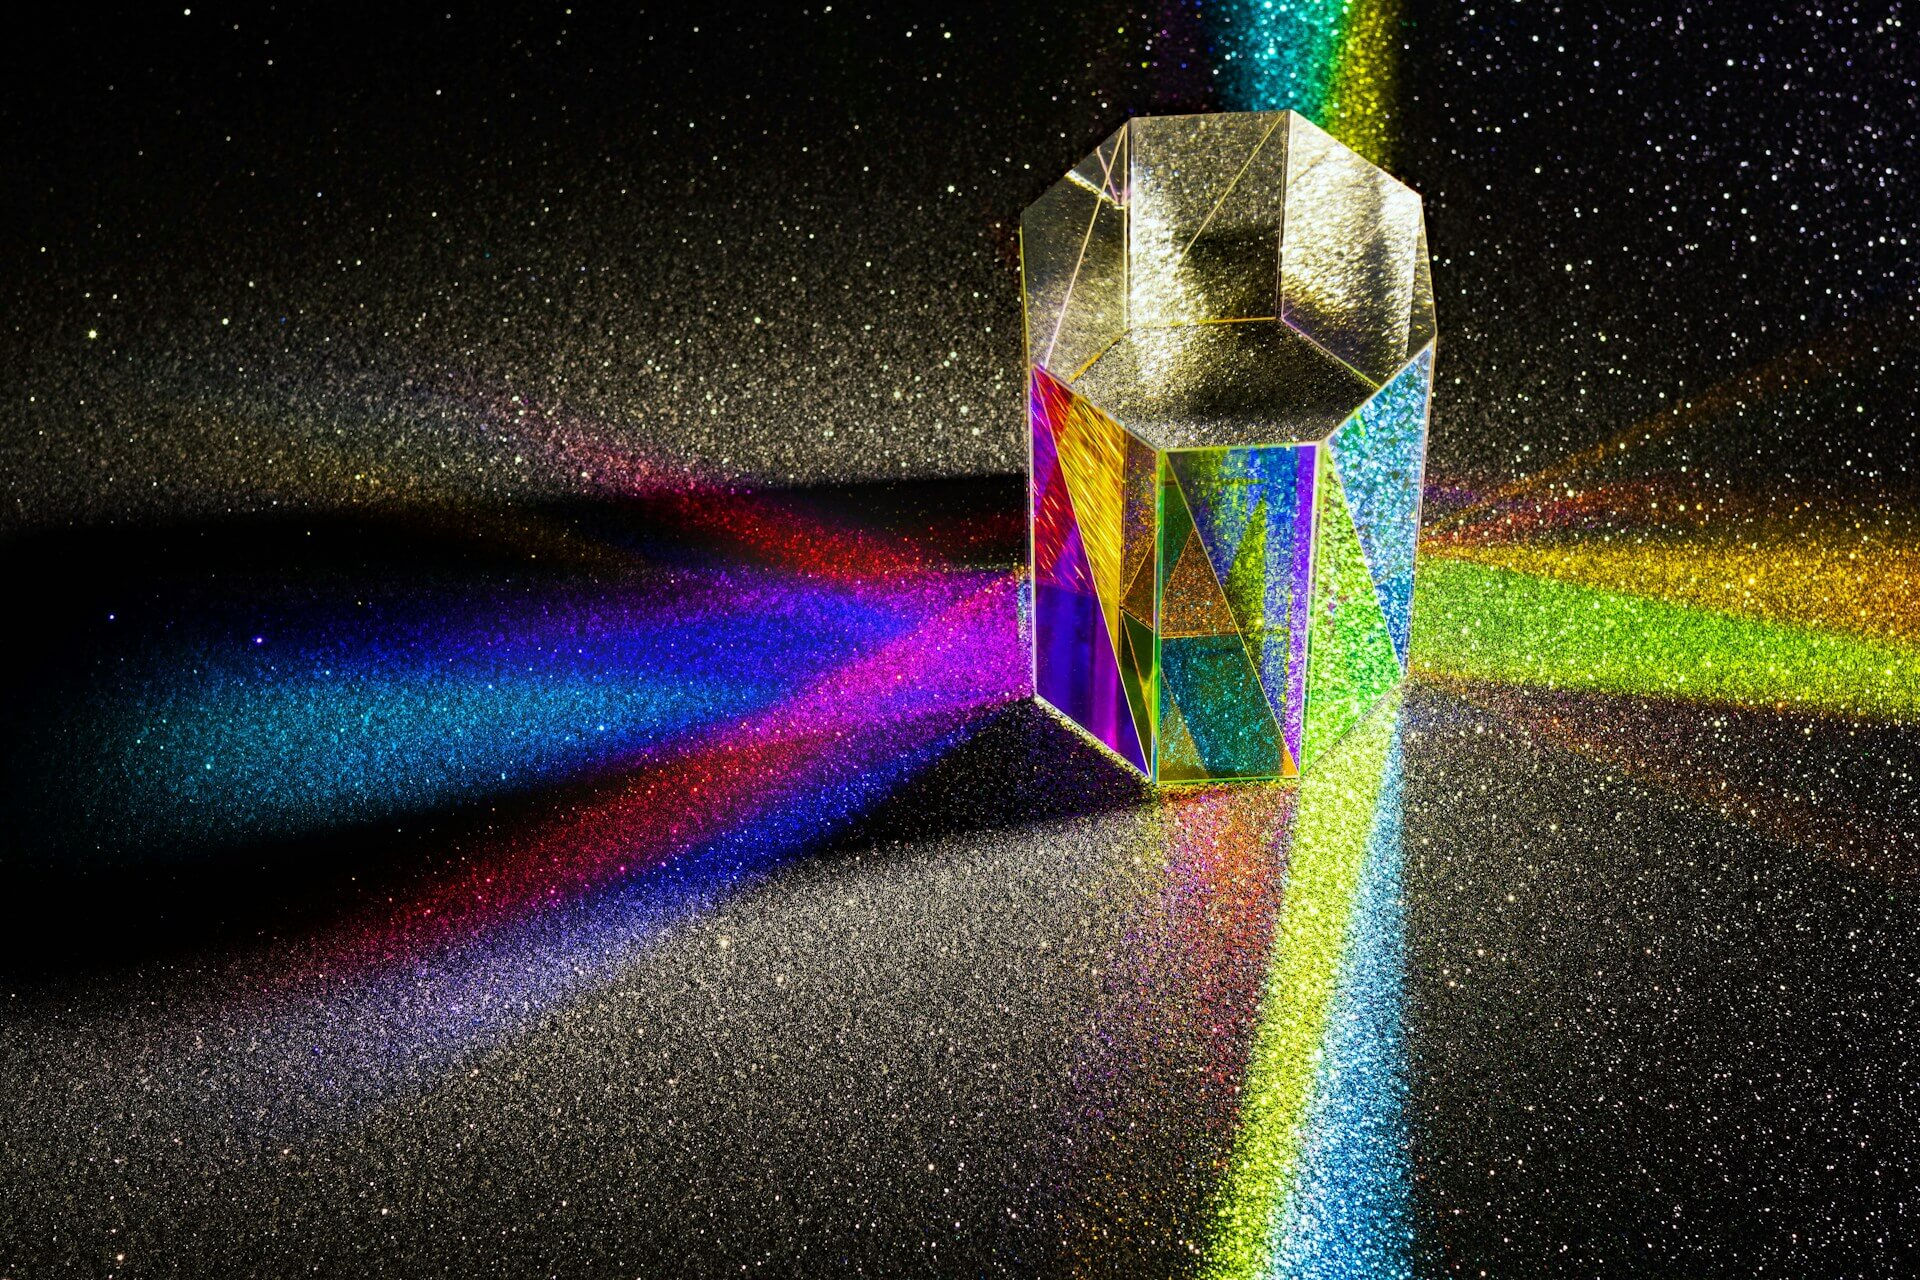 Light refracting through prism